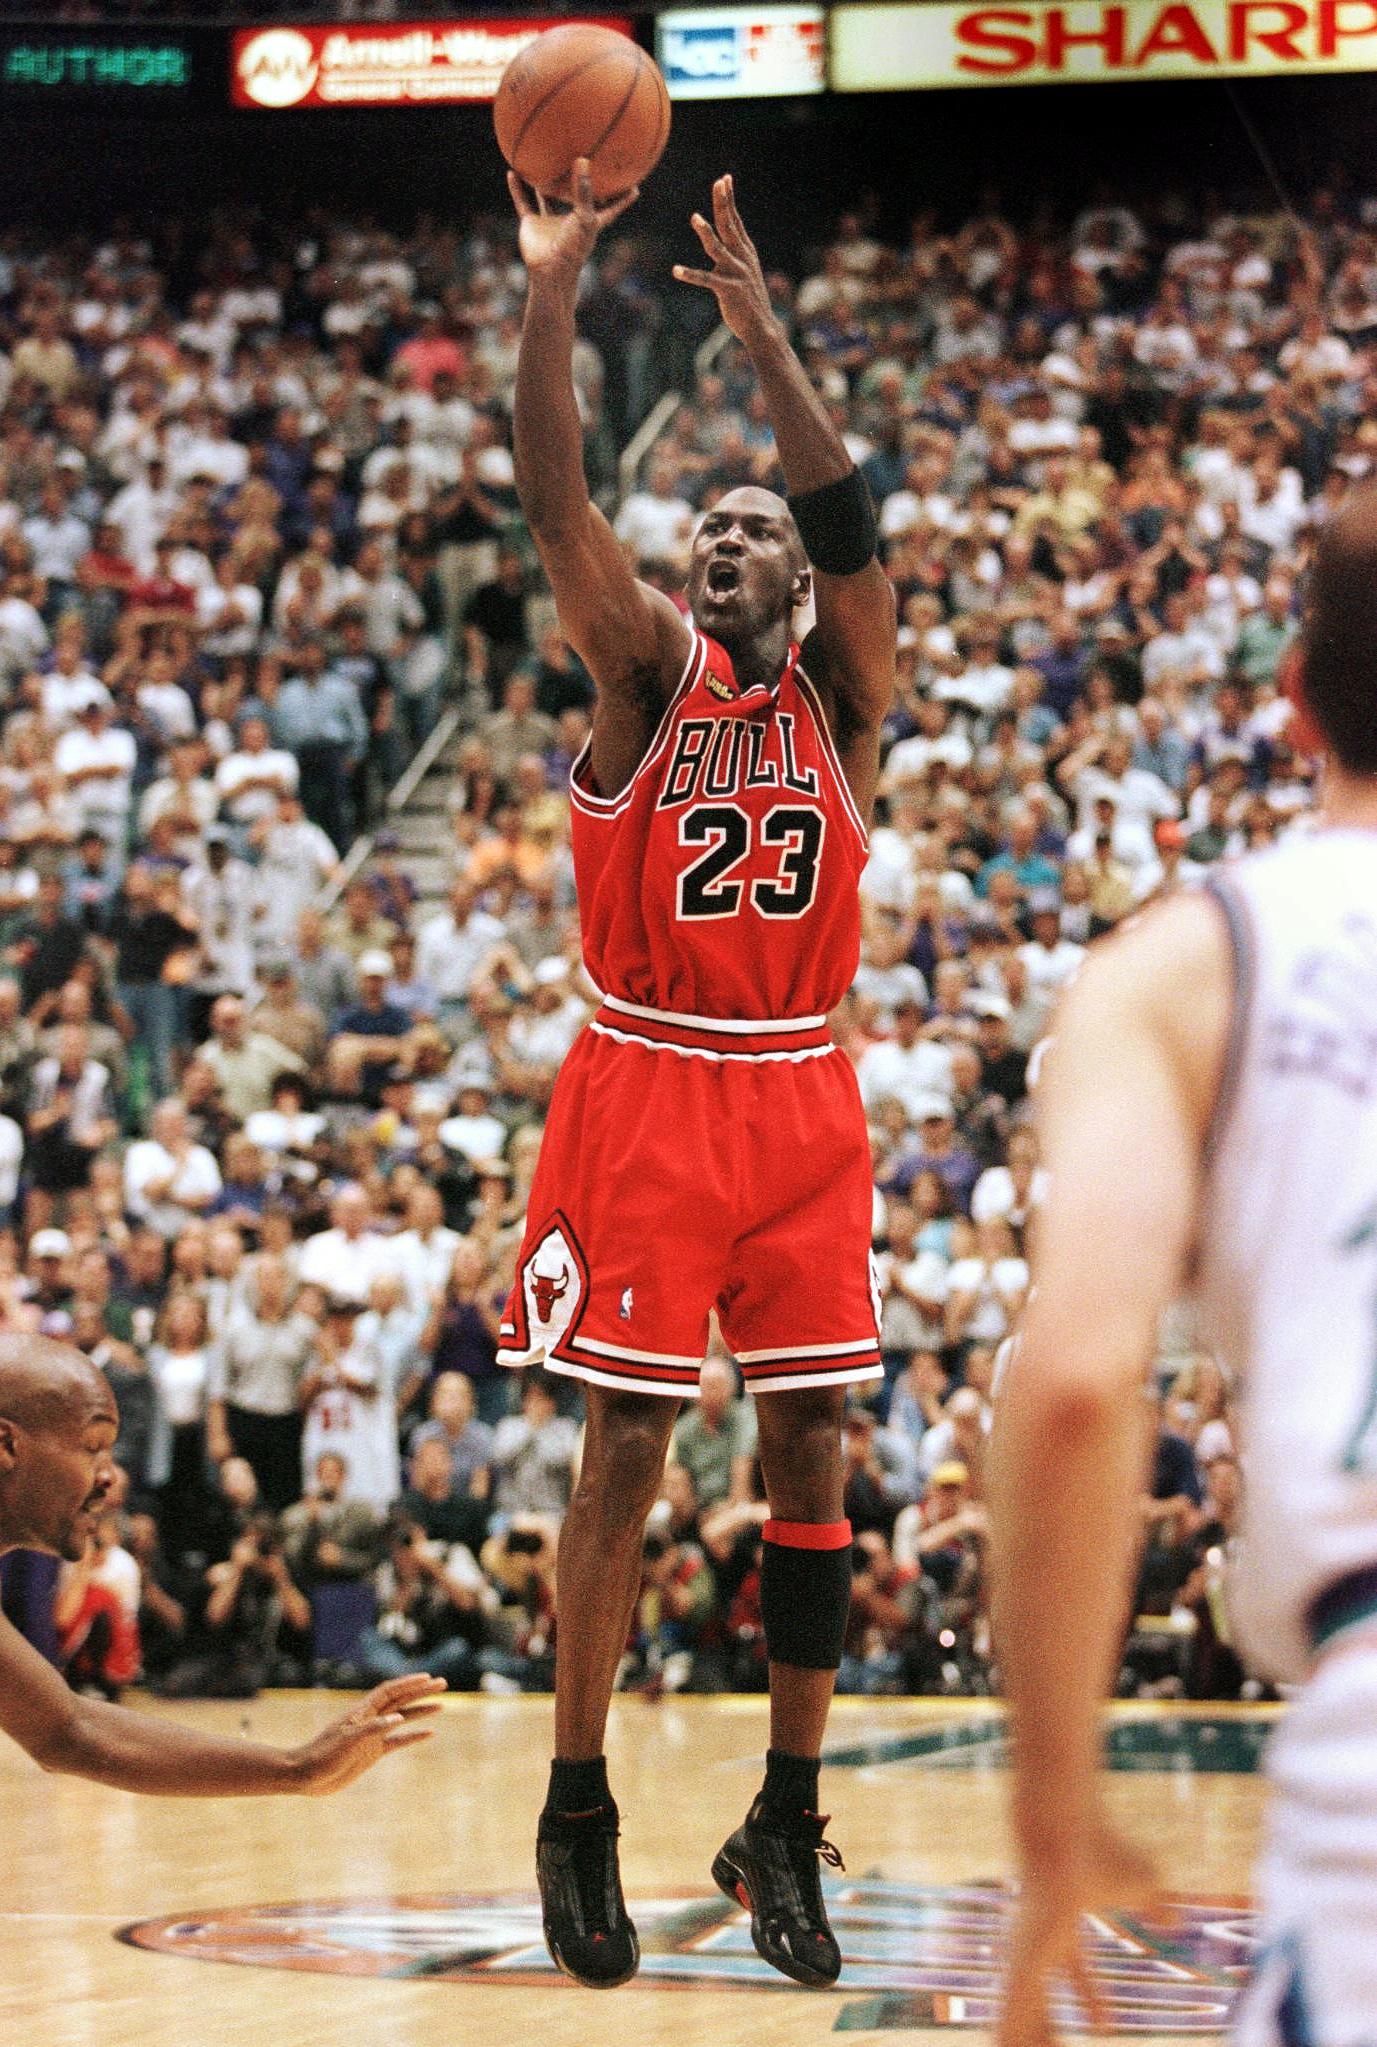 Woods schien sich von der Basketballlegende Michael Jordan inspirieren zu lassen